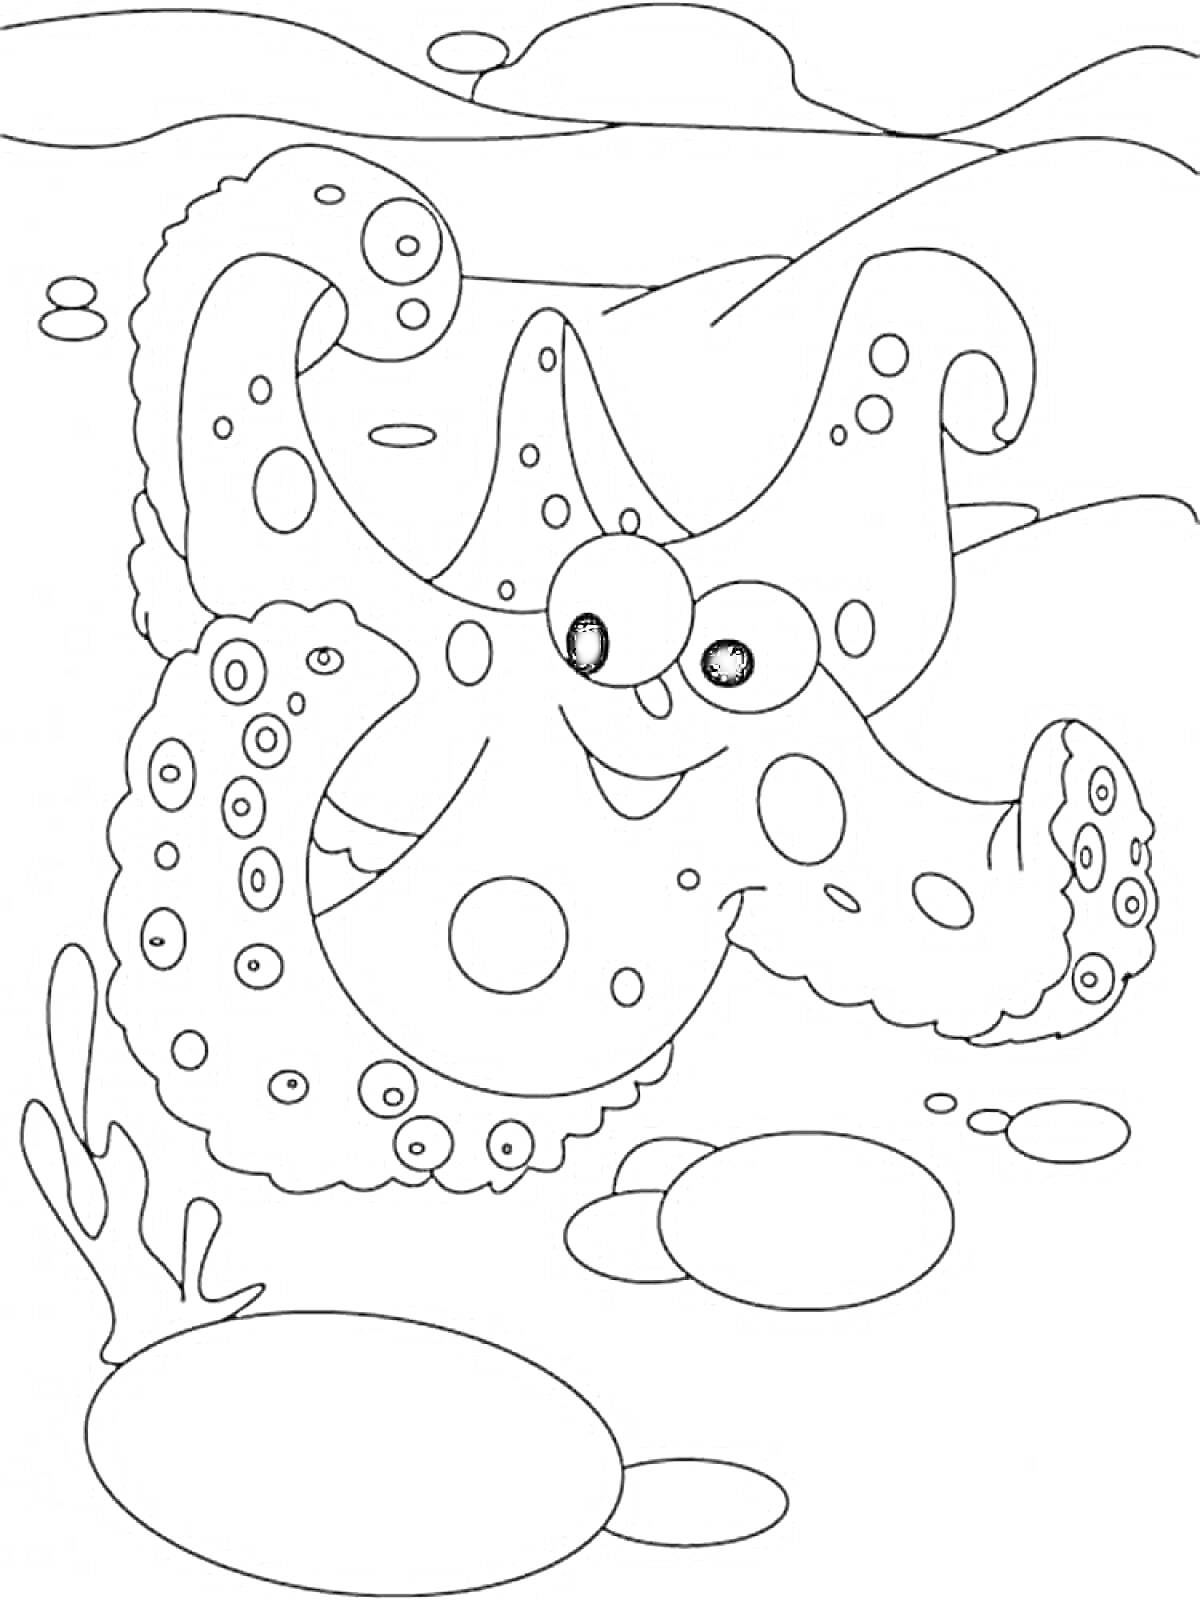 Раскраска Счастливая морская звезда на дне океана с водорослями и камнями